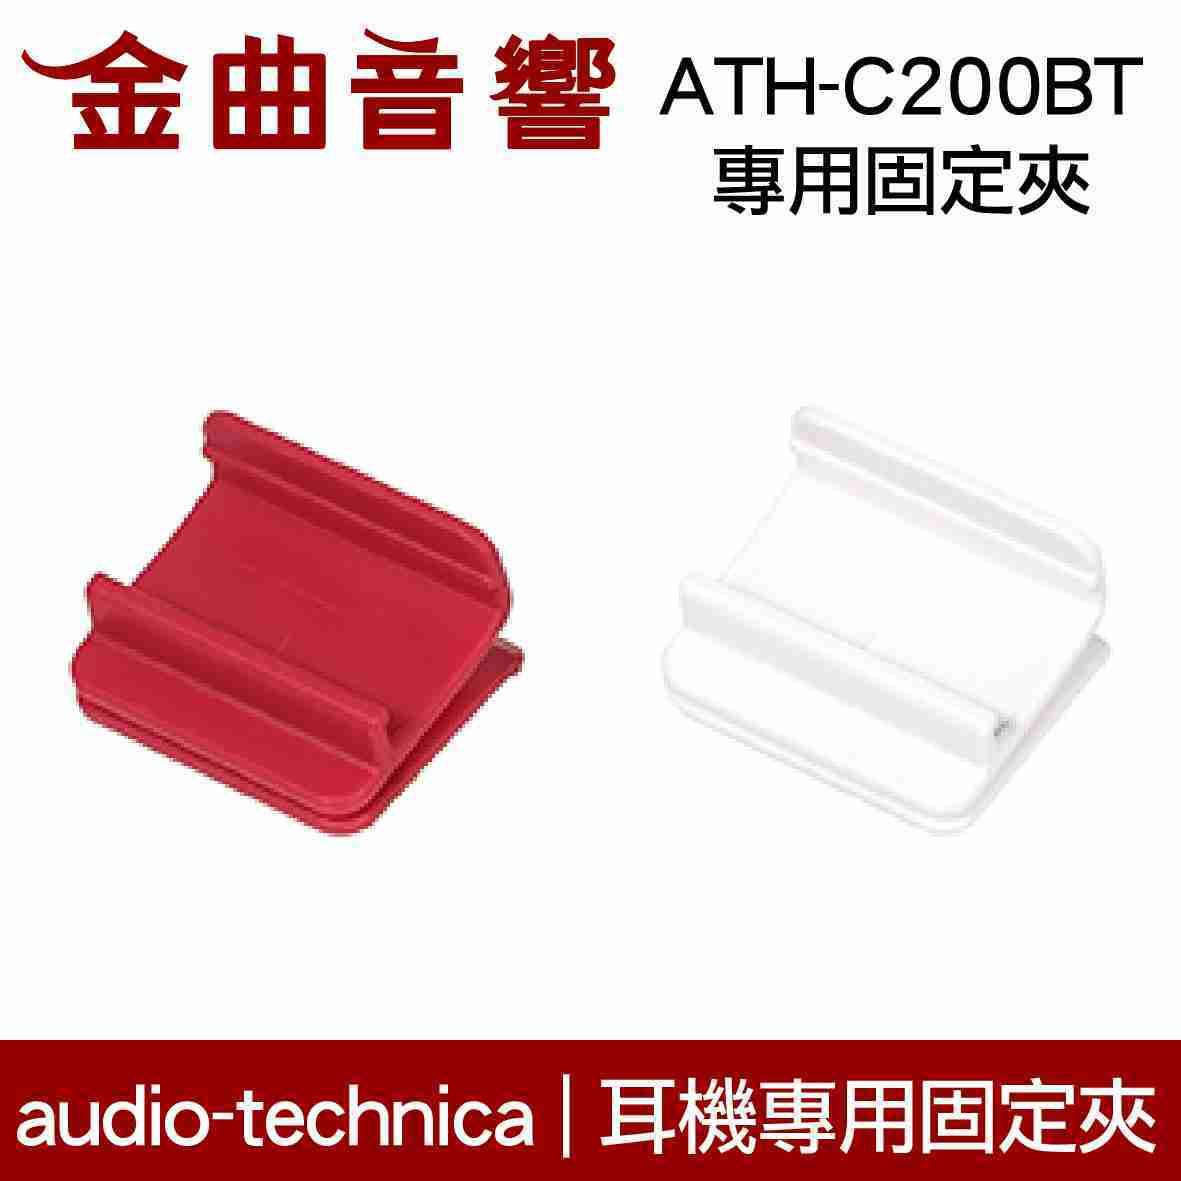 鐵三角 固定夾 適用 ATH-C200BT 耳機 專用夾 | 金曲音響